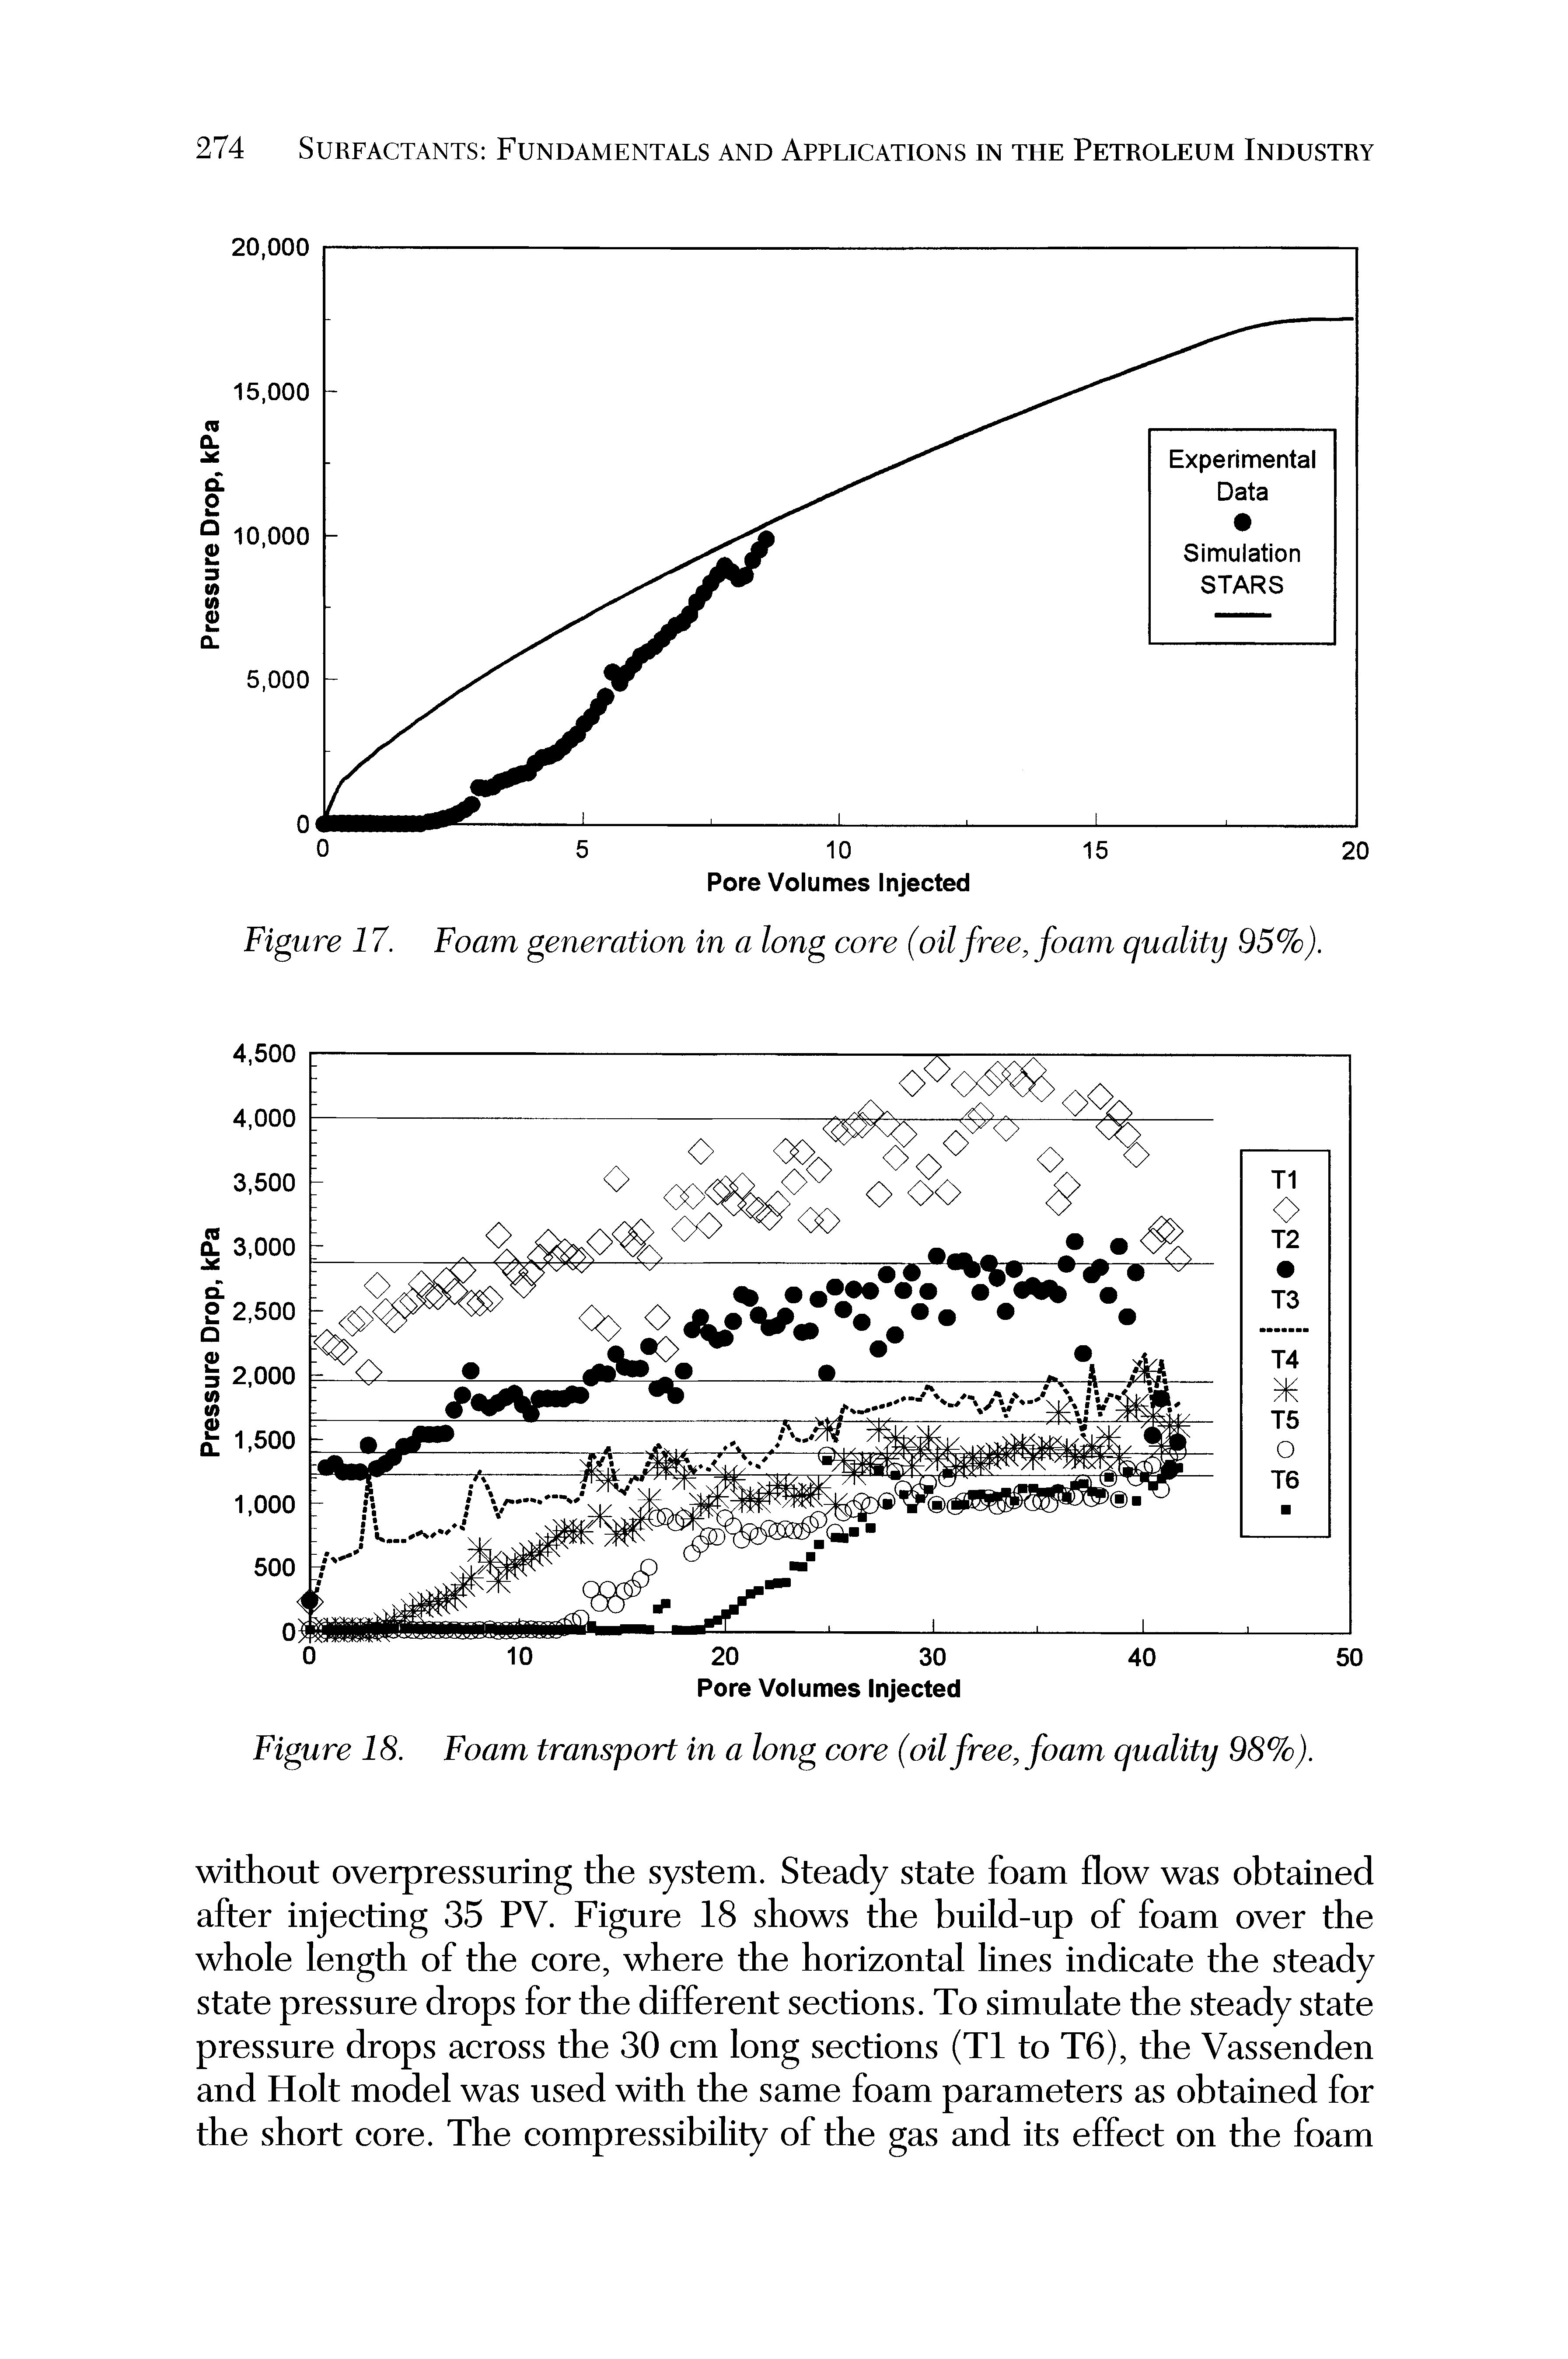 Figure 18. Foam transport in a long core (oil free, foam quality 98%).